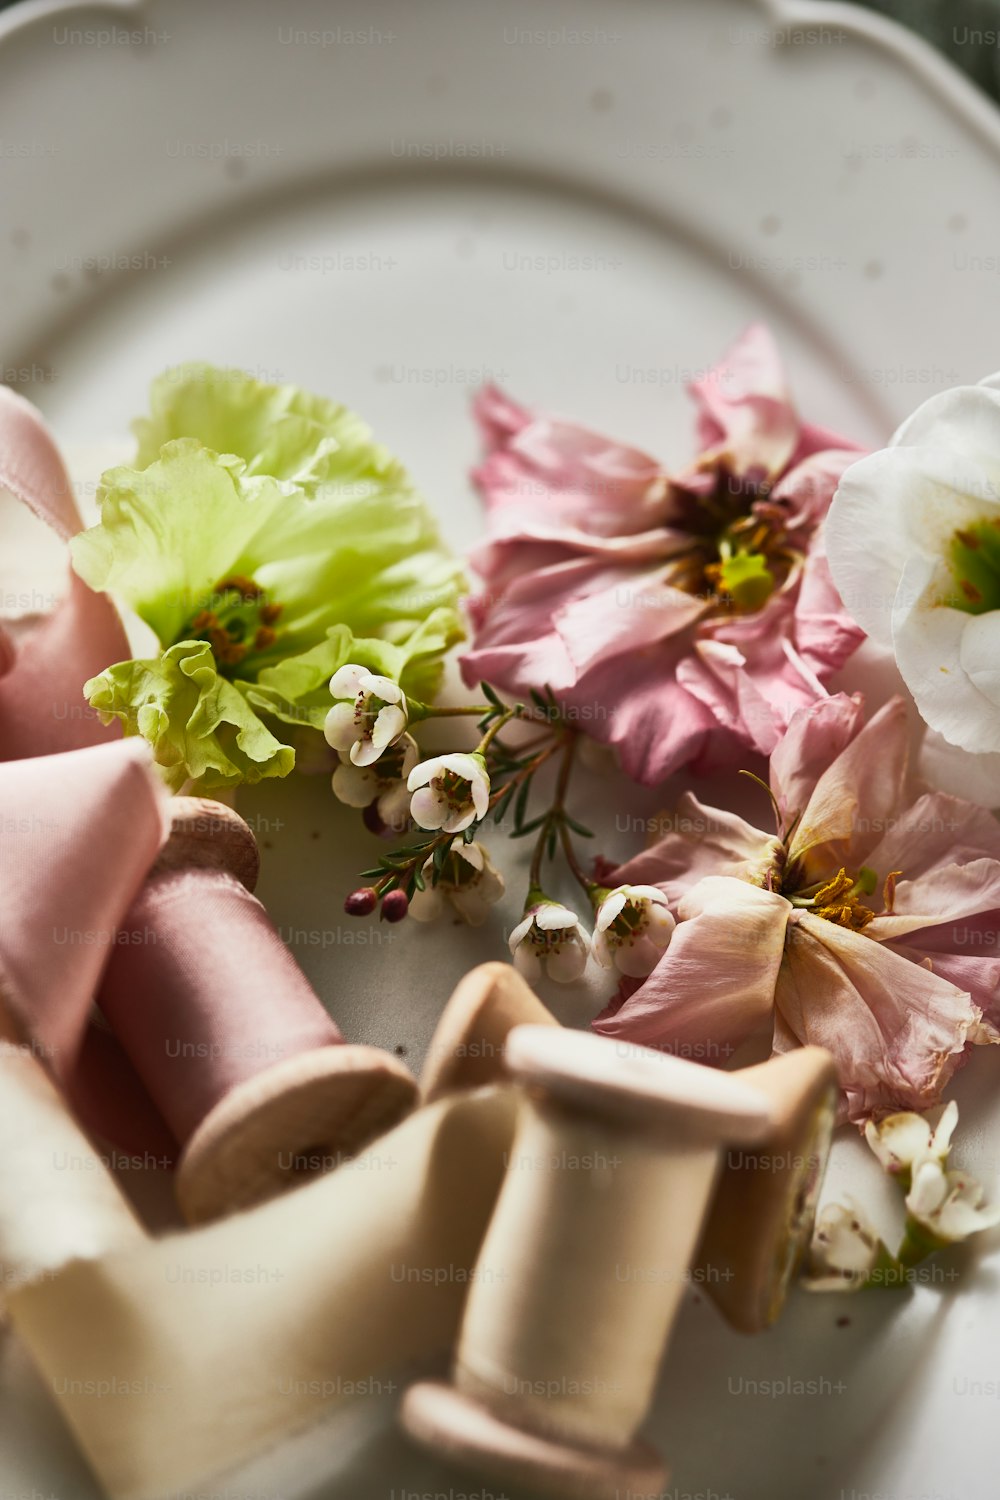 un piatto bianco sormontato da fiori rosa e verdi